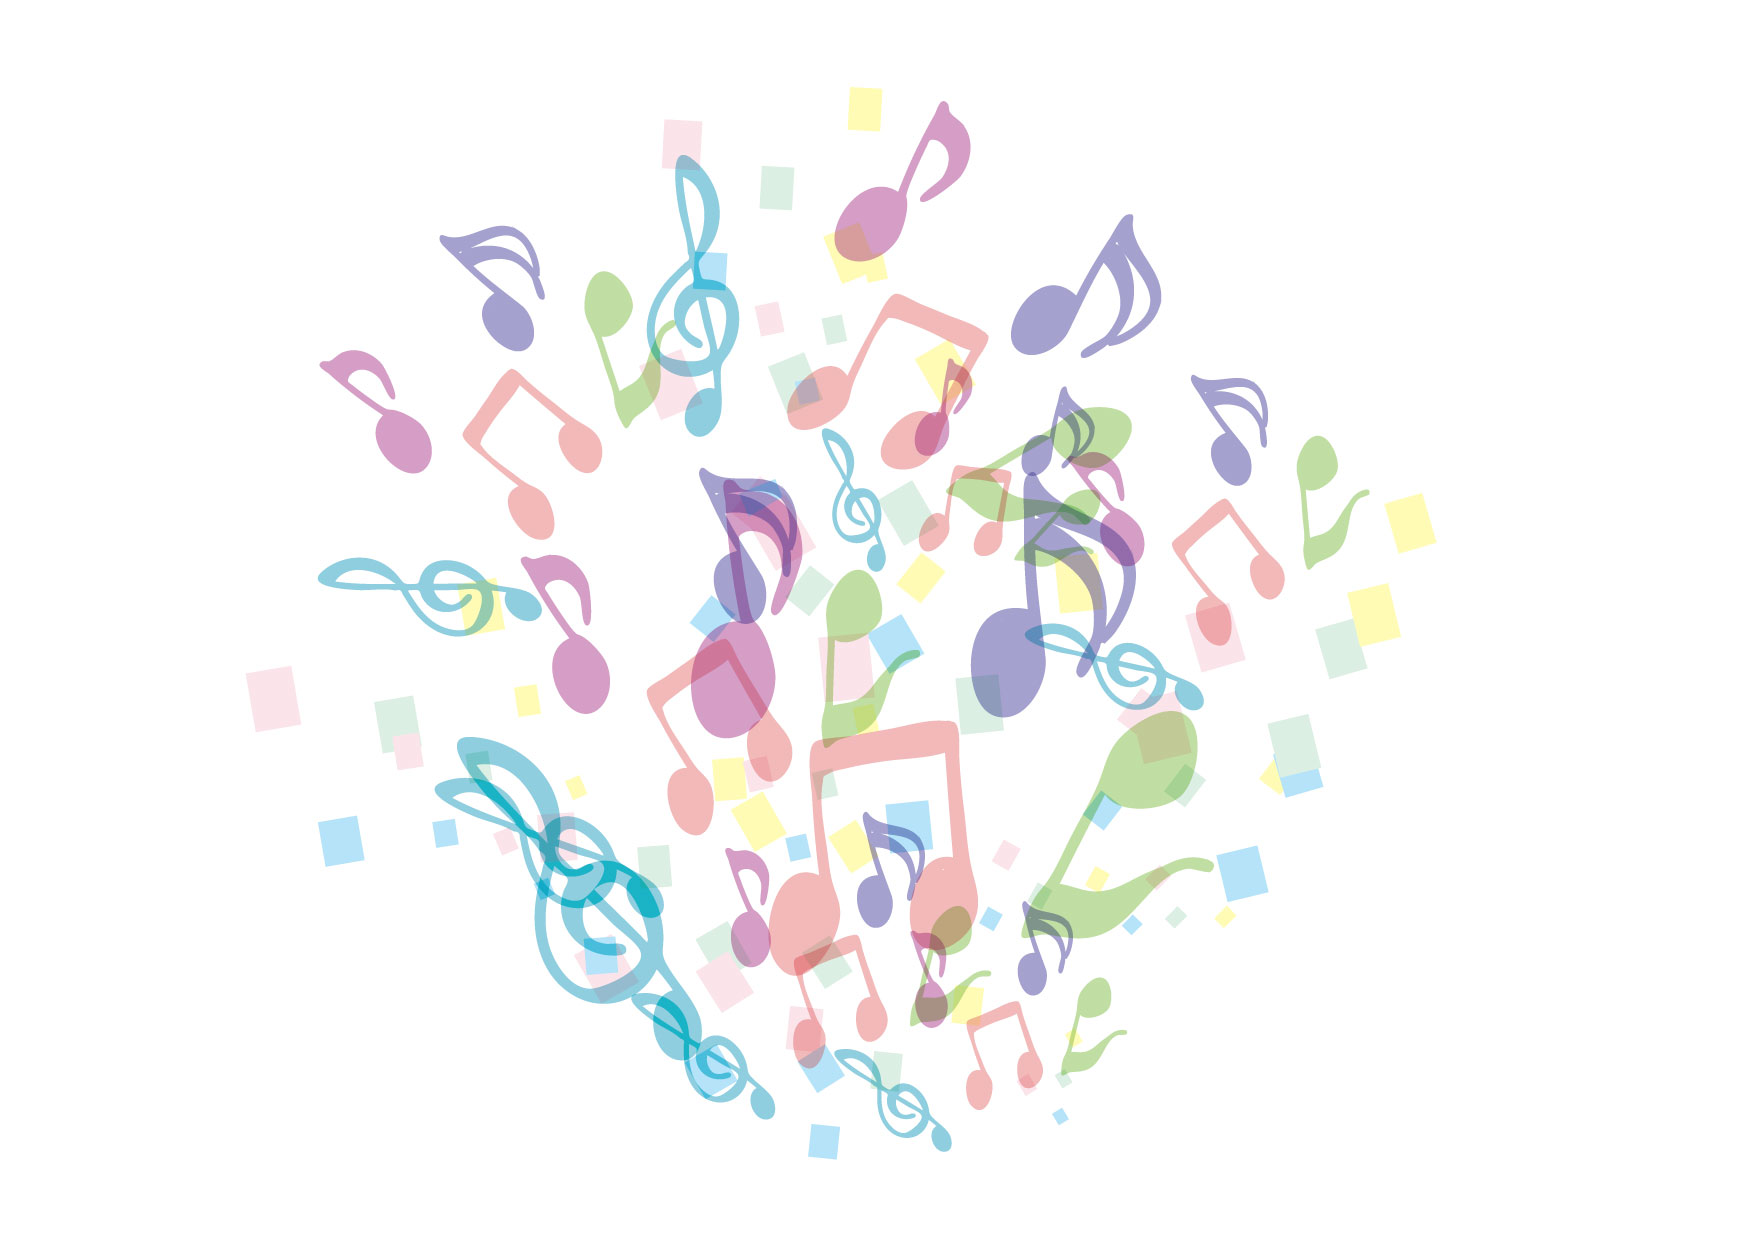 復興支援 チャリティーコンサート ― 音楽の力 ―